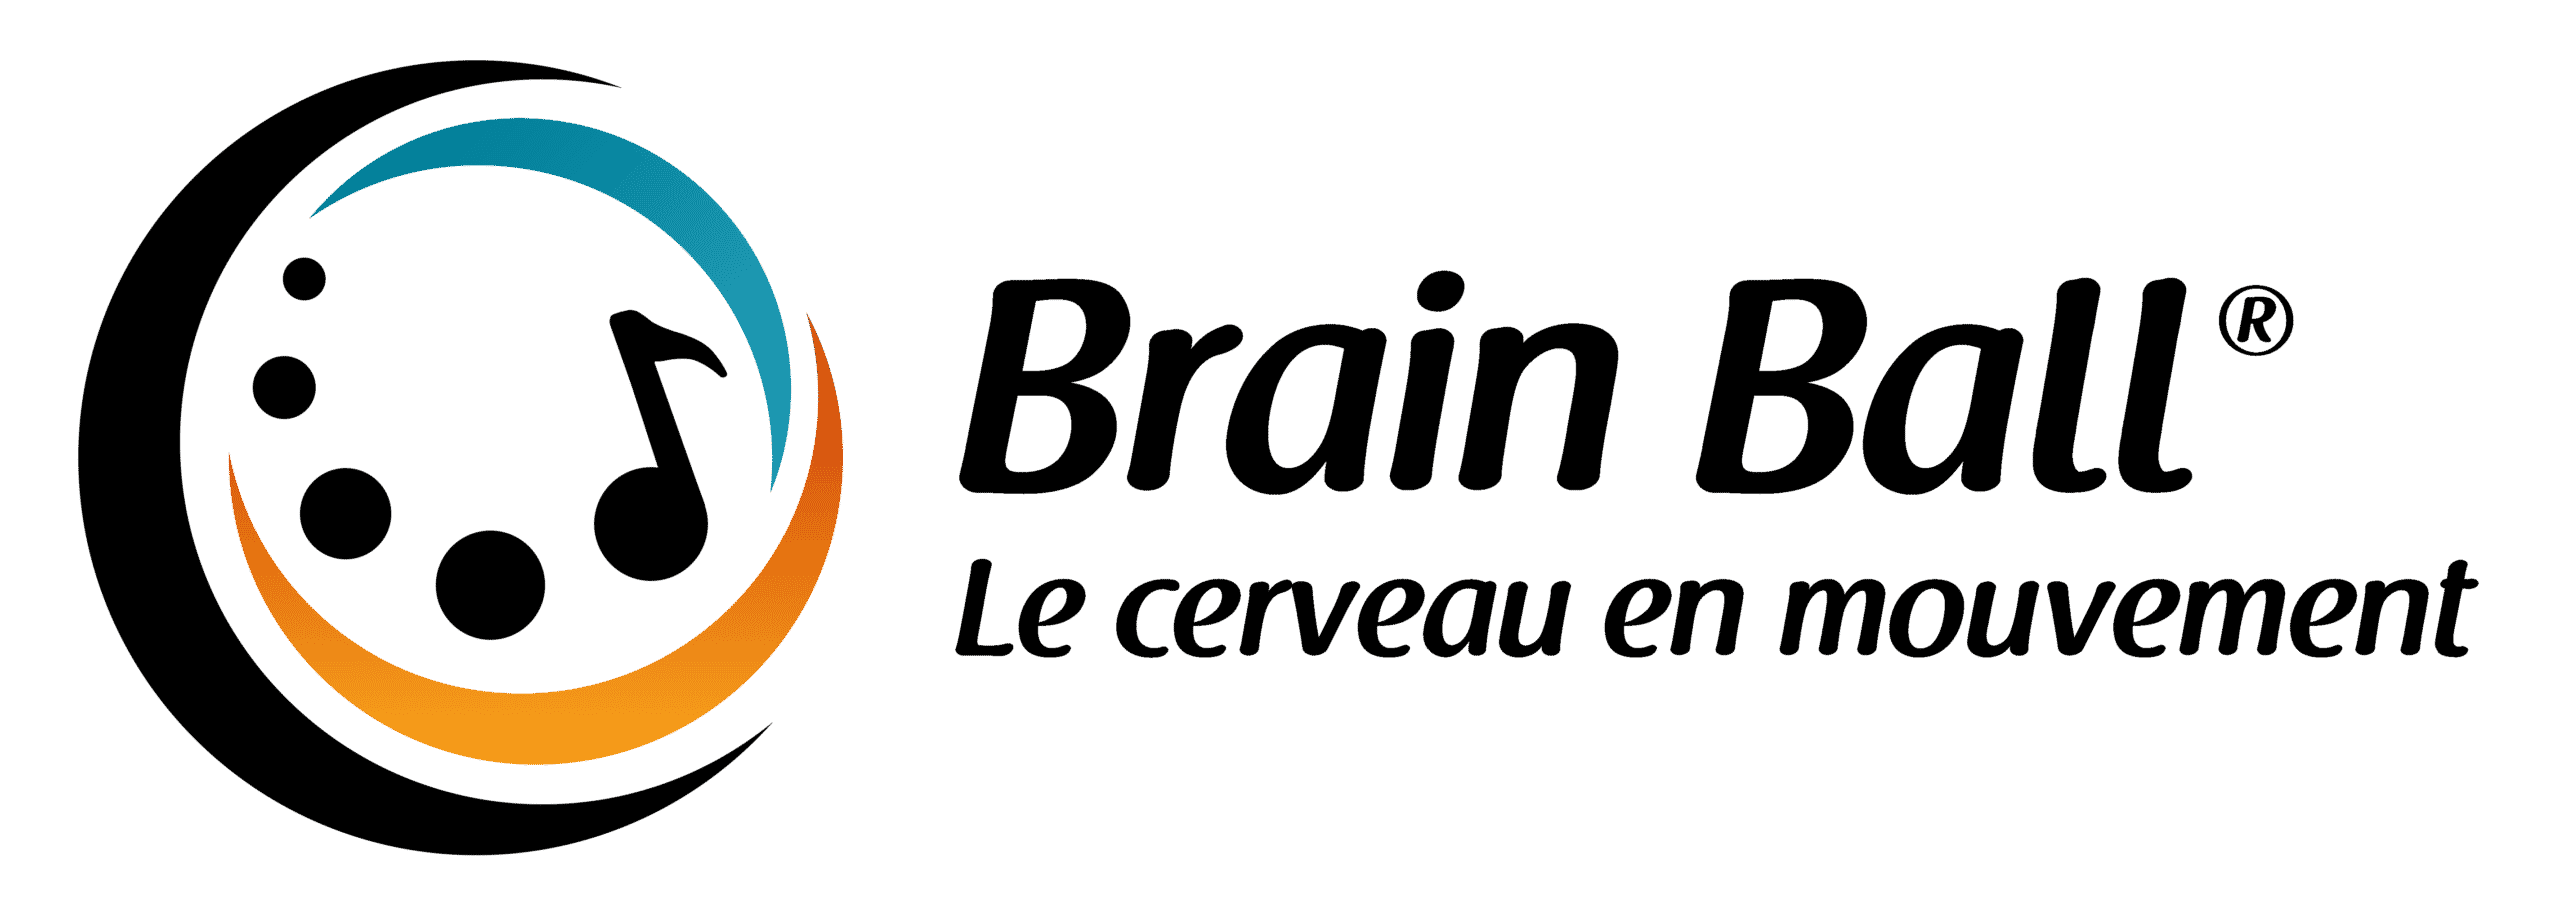 La Boutique Brain Ball